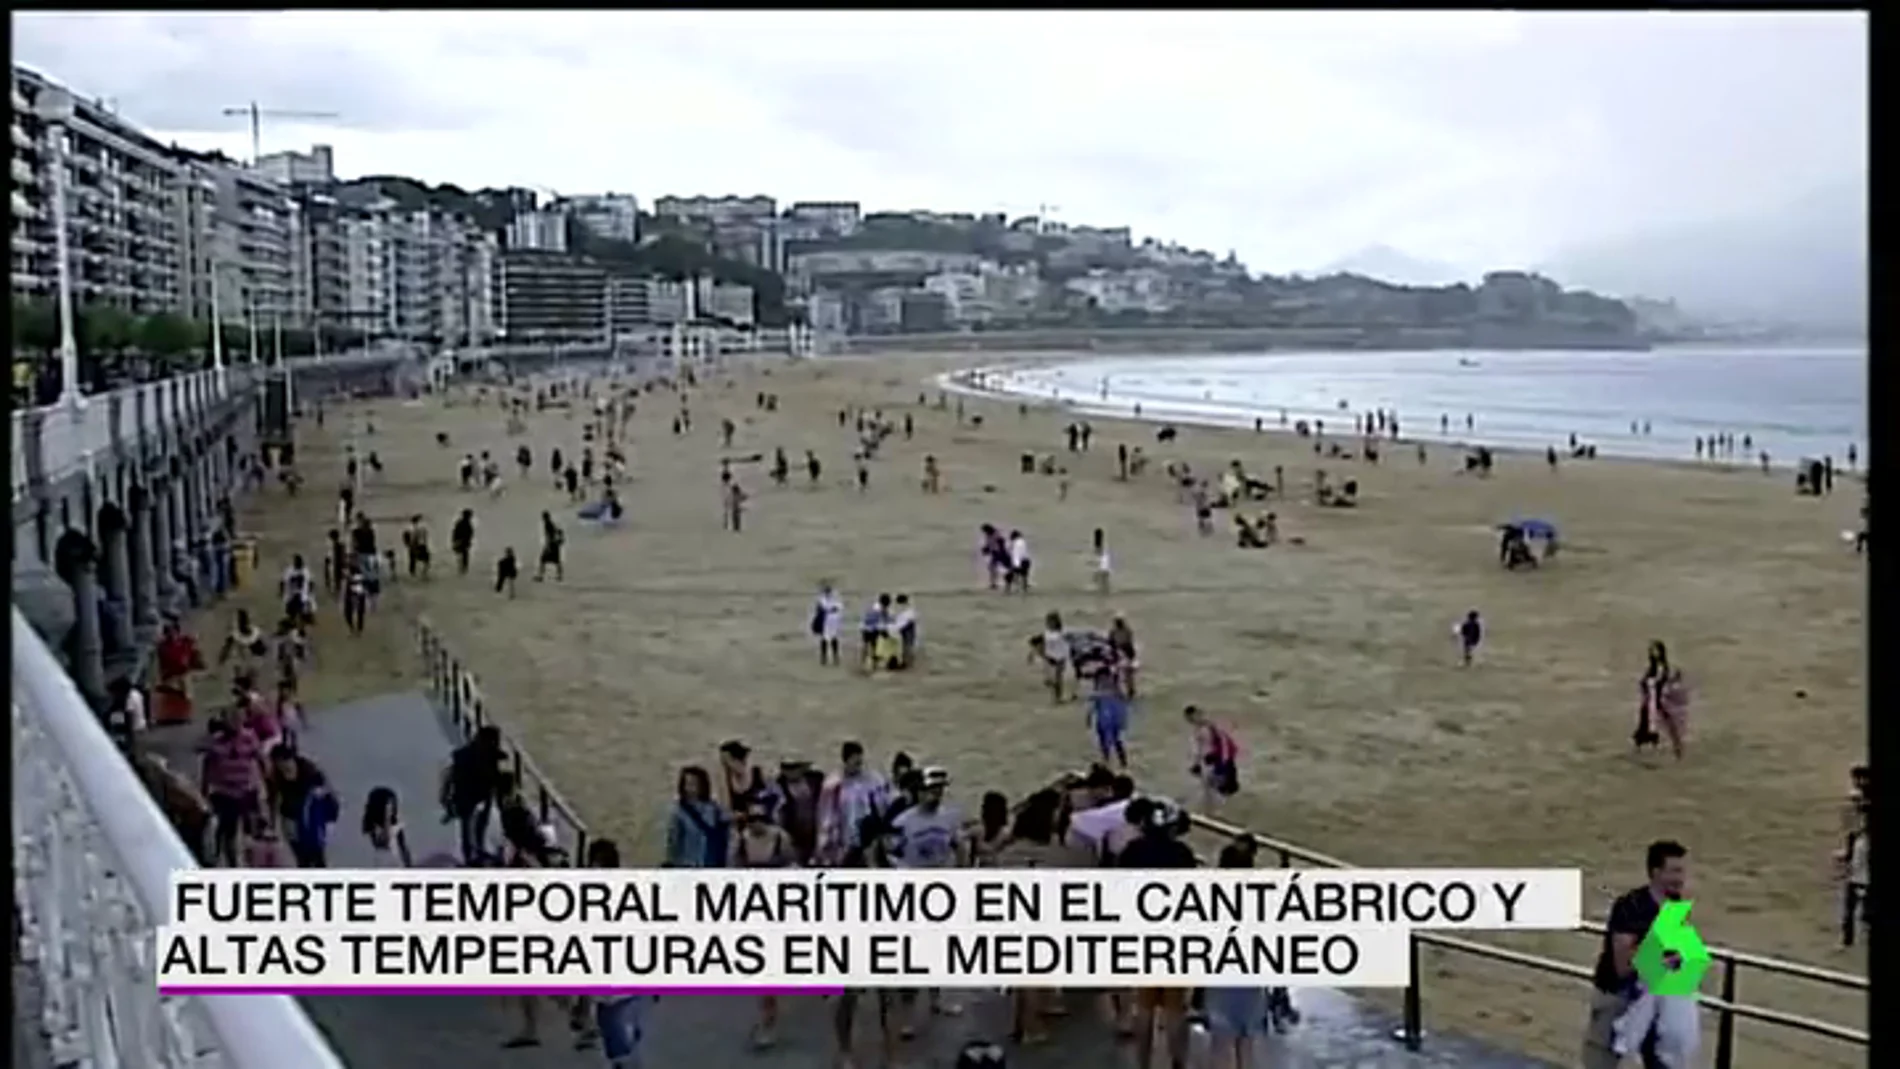 Fuerte temporal marítimo en el Cantábrico mientras que en el Mediterráneo experimentan altas temperaturas